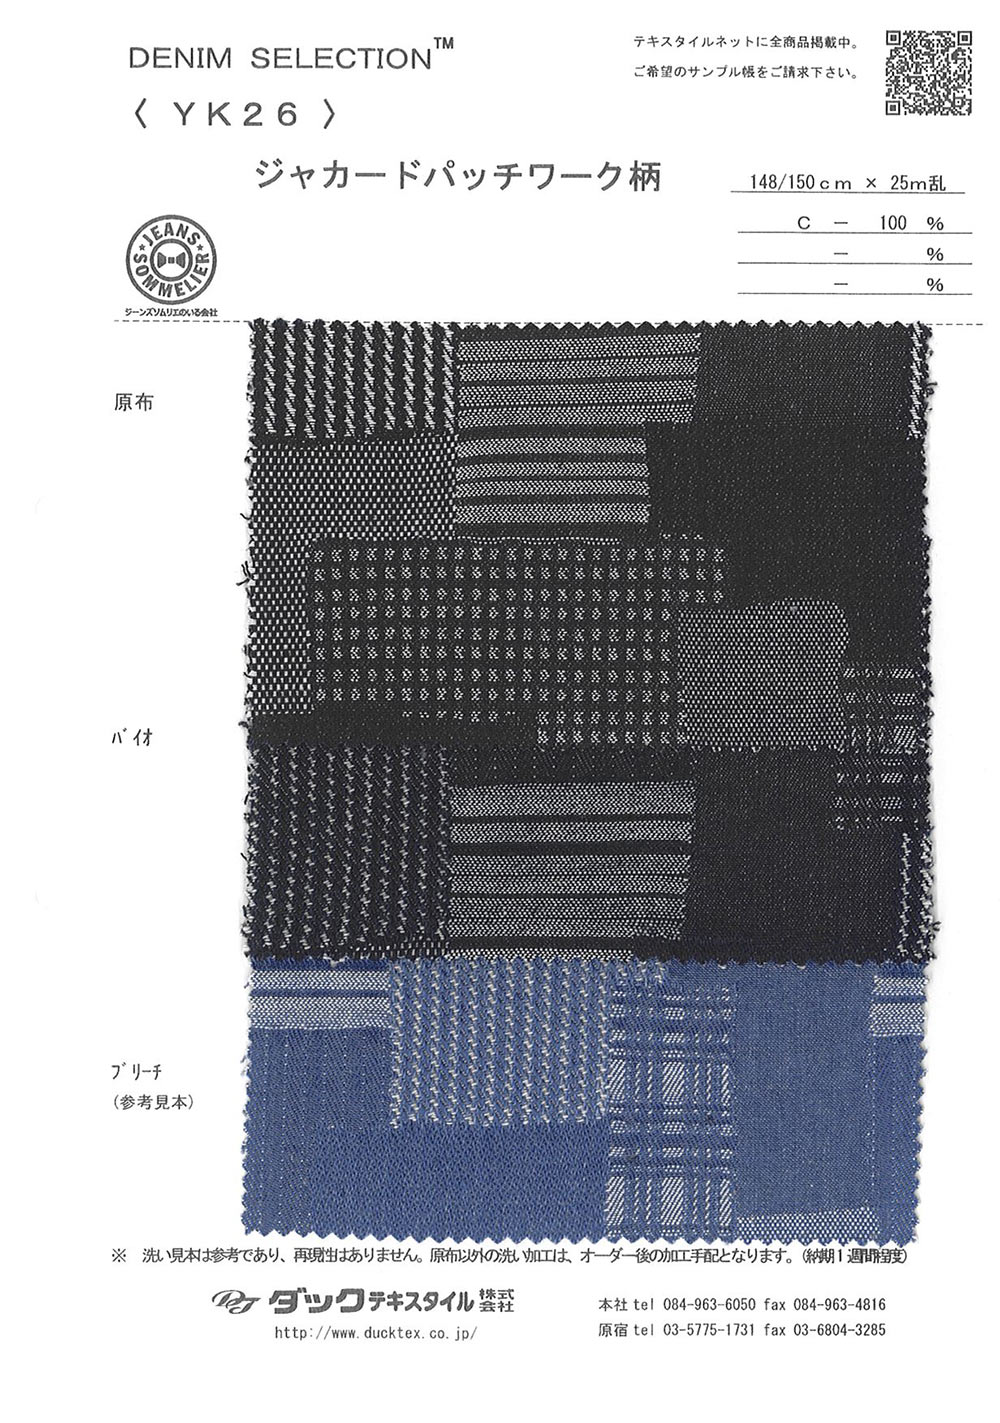 YK26 Jacquard Patchwork Design[Têxtil / Tecido] DUCK TEXTILE